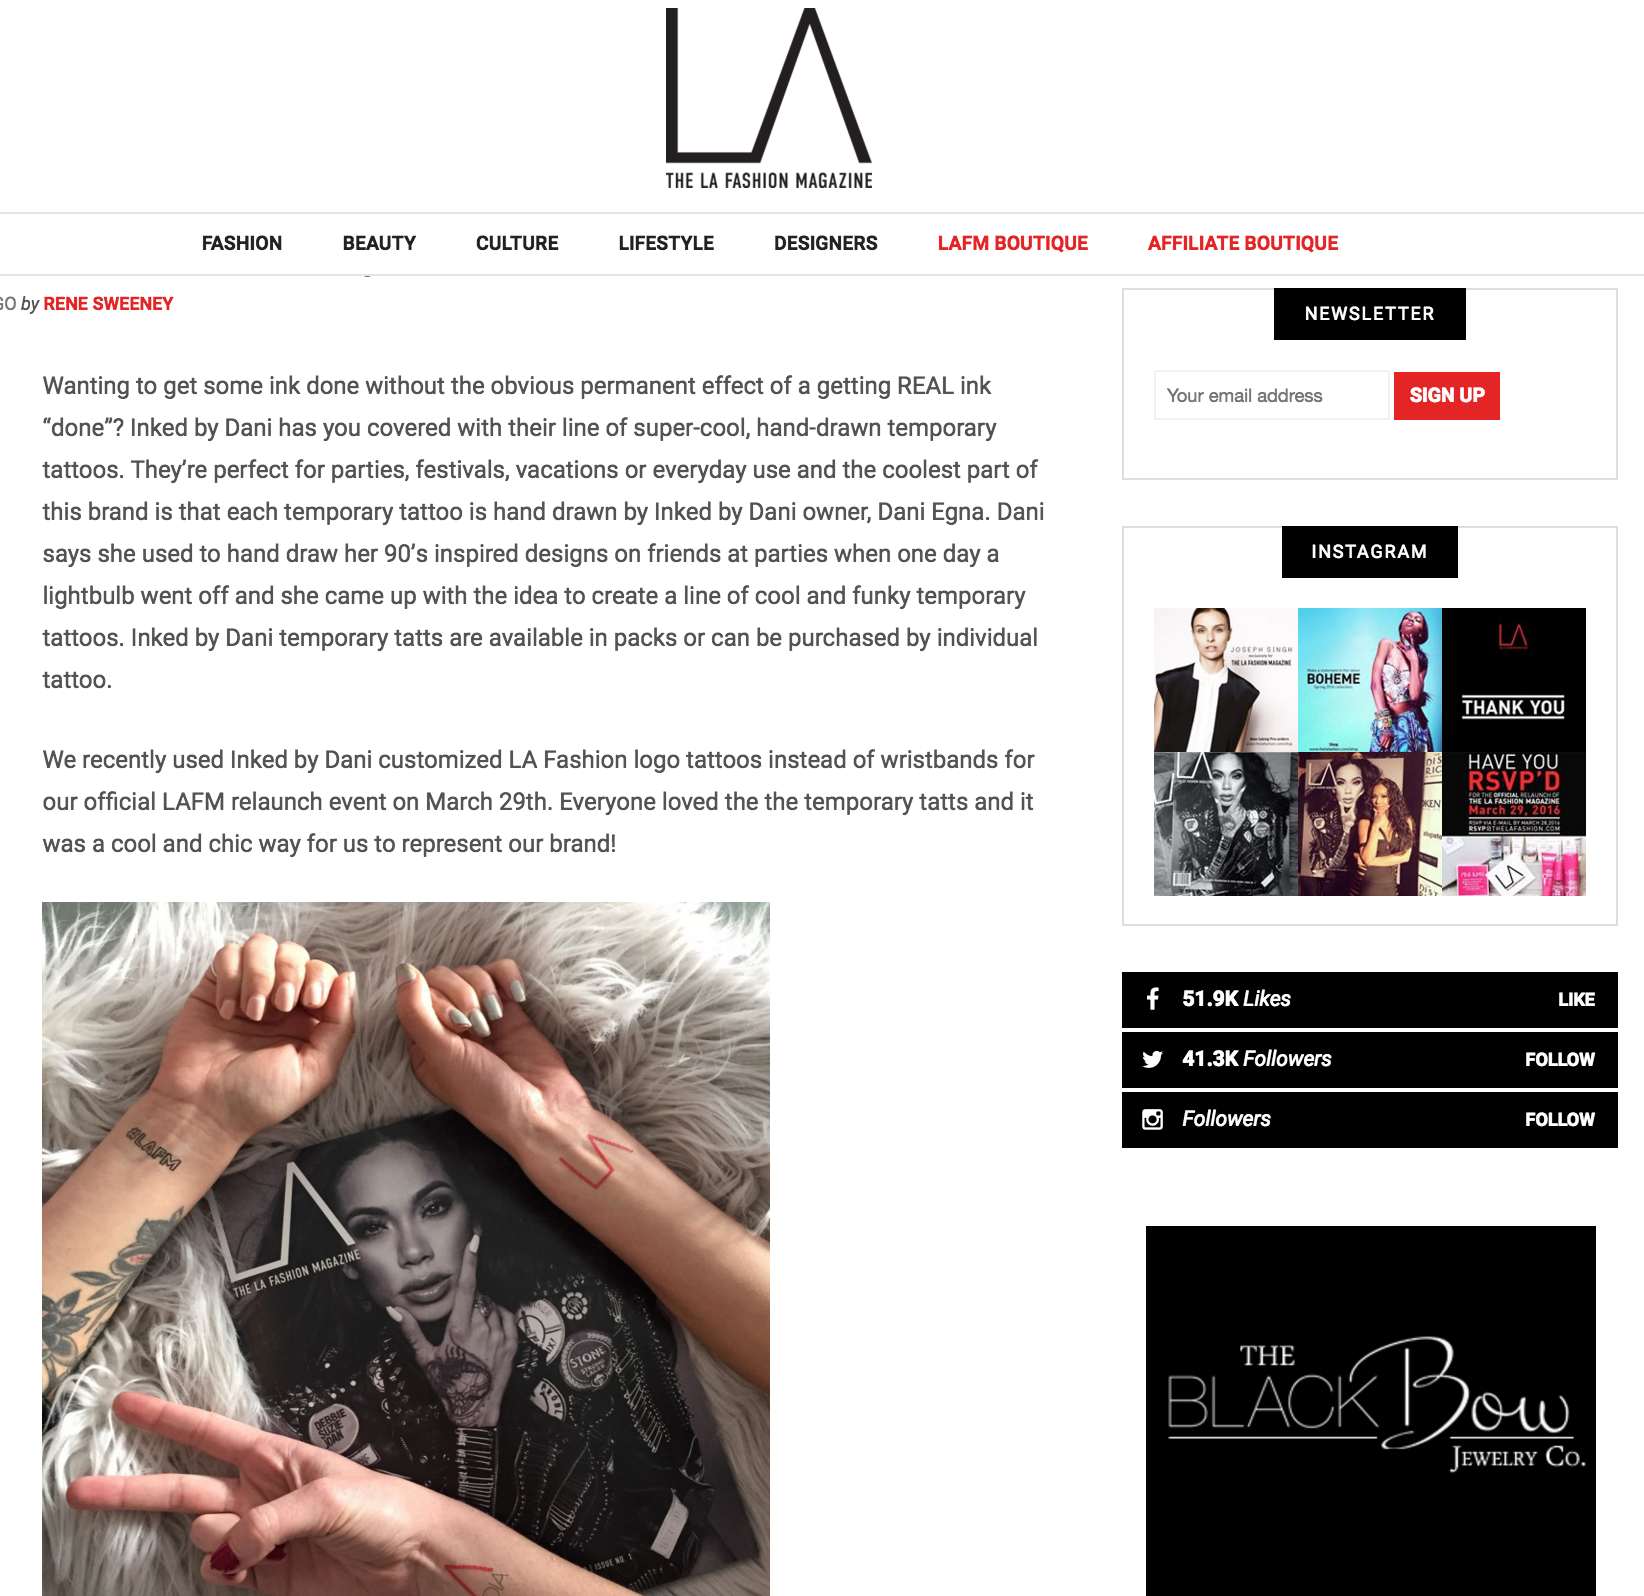 LA Fashion Magazine Re-Launch Event